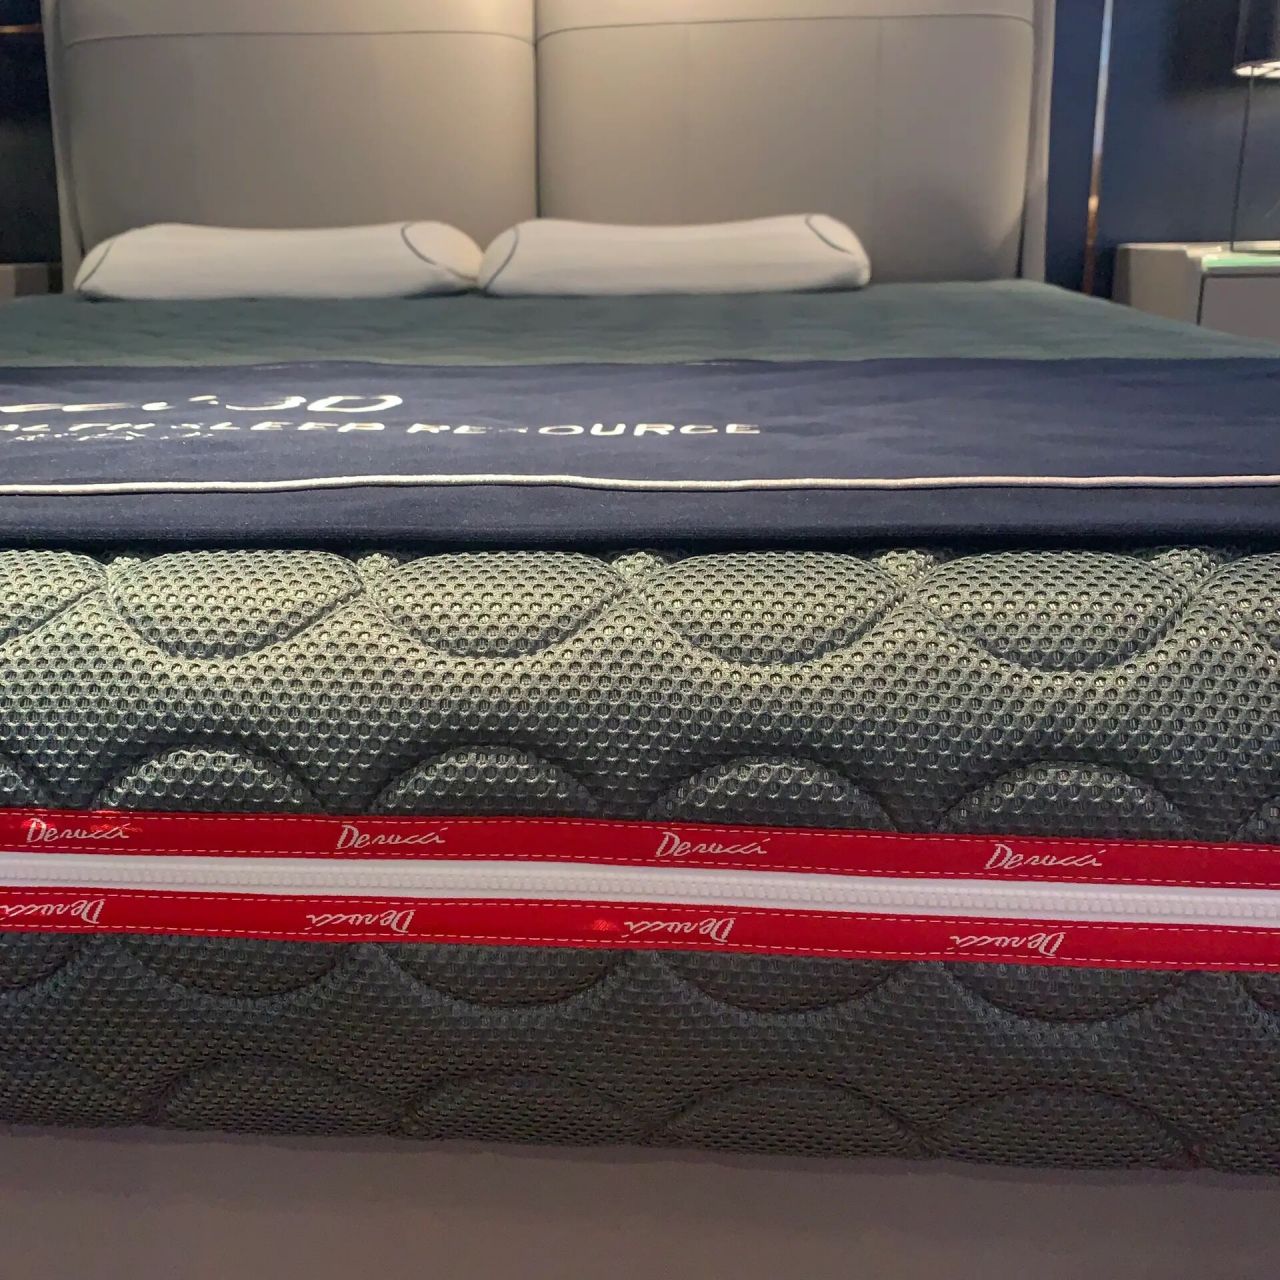 慕思3d系列真皮床配全3d床垫  慕思纯3d床垫可完全水洗,3d材质搭配3d